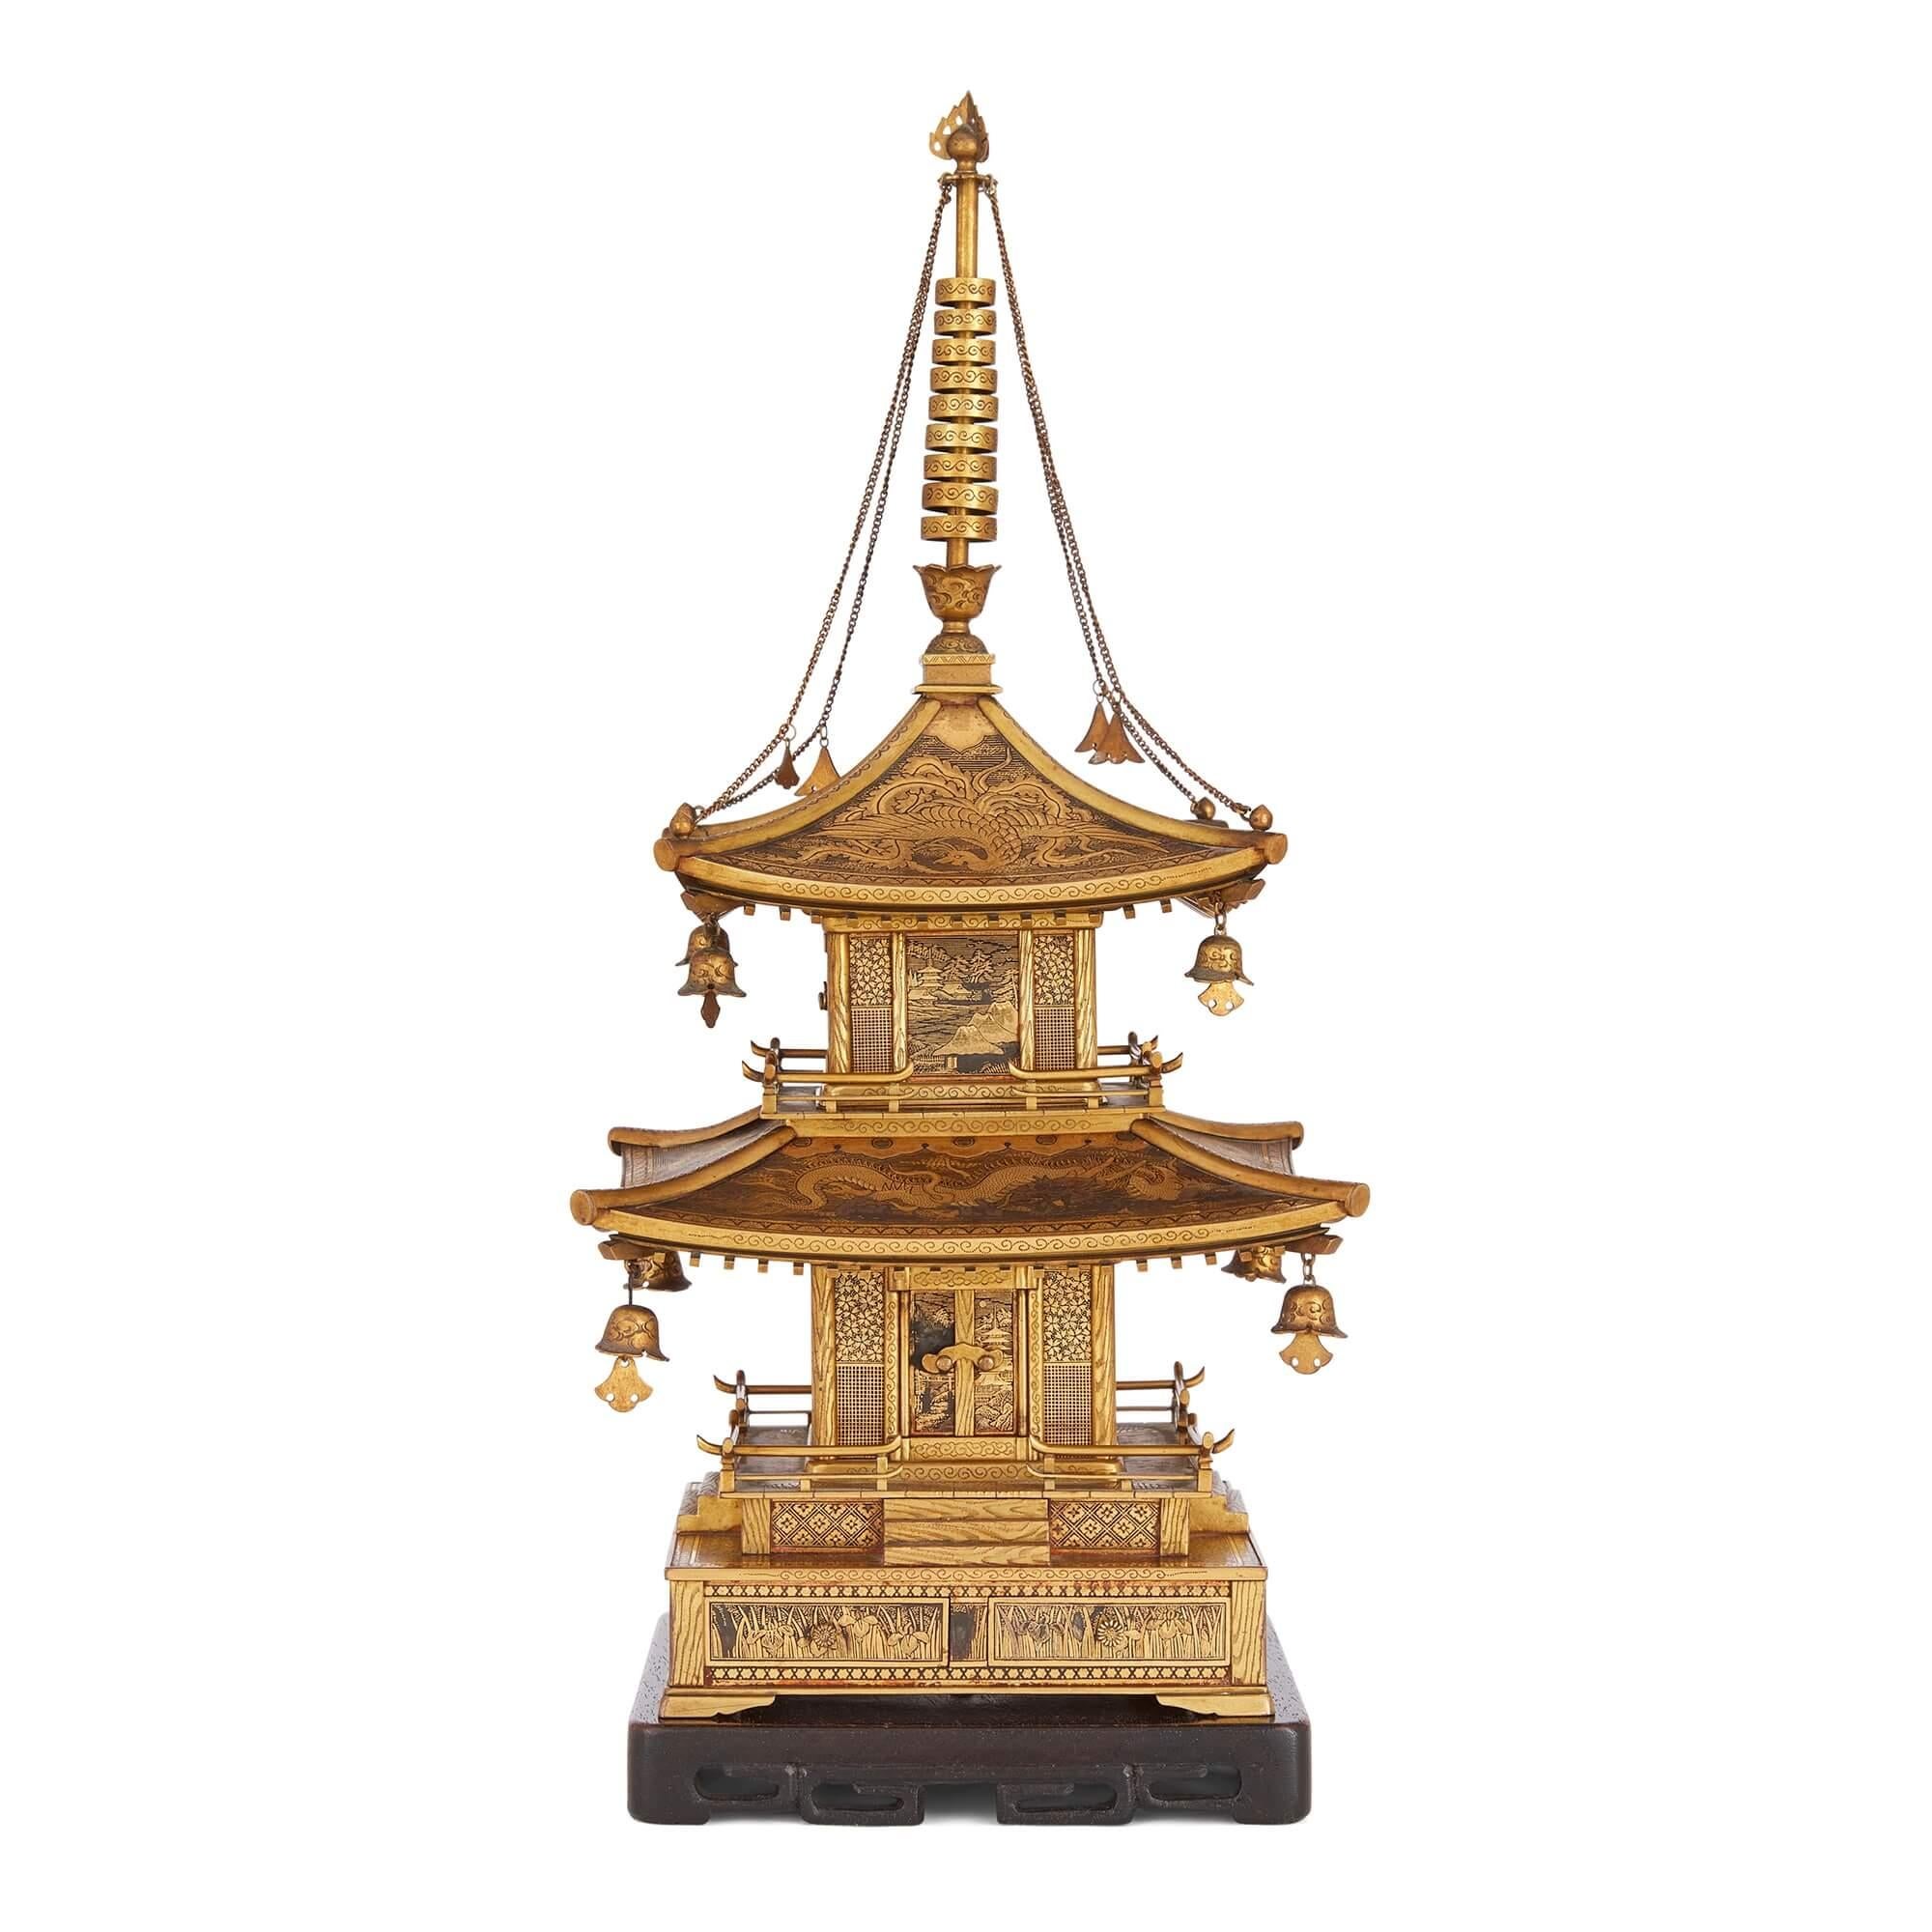 Modèle de pagode japonaise en fer incrusté de Komai de la période Meiji
Japonais, fin du 19ème siècle 
Temple : Hauteur 33cm, largeur 15cm, profondeur 15cm
Base : Hauteur 2 cm, largeur 13,5 cm, profondeur 13,5 cm
Ensemble : Hauteur 35cm, largeur